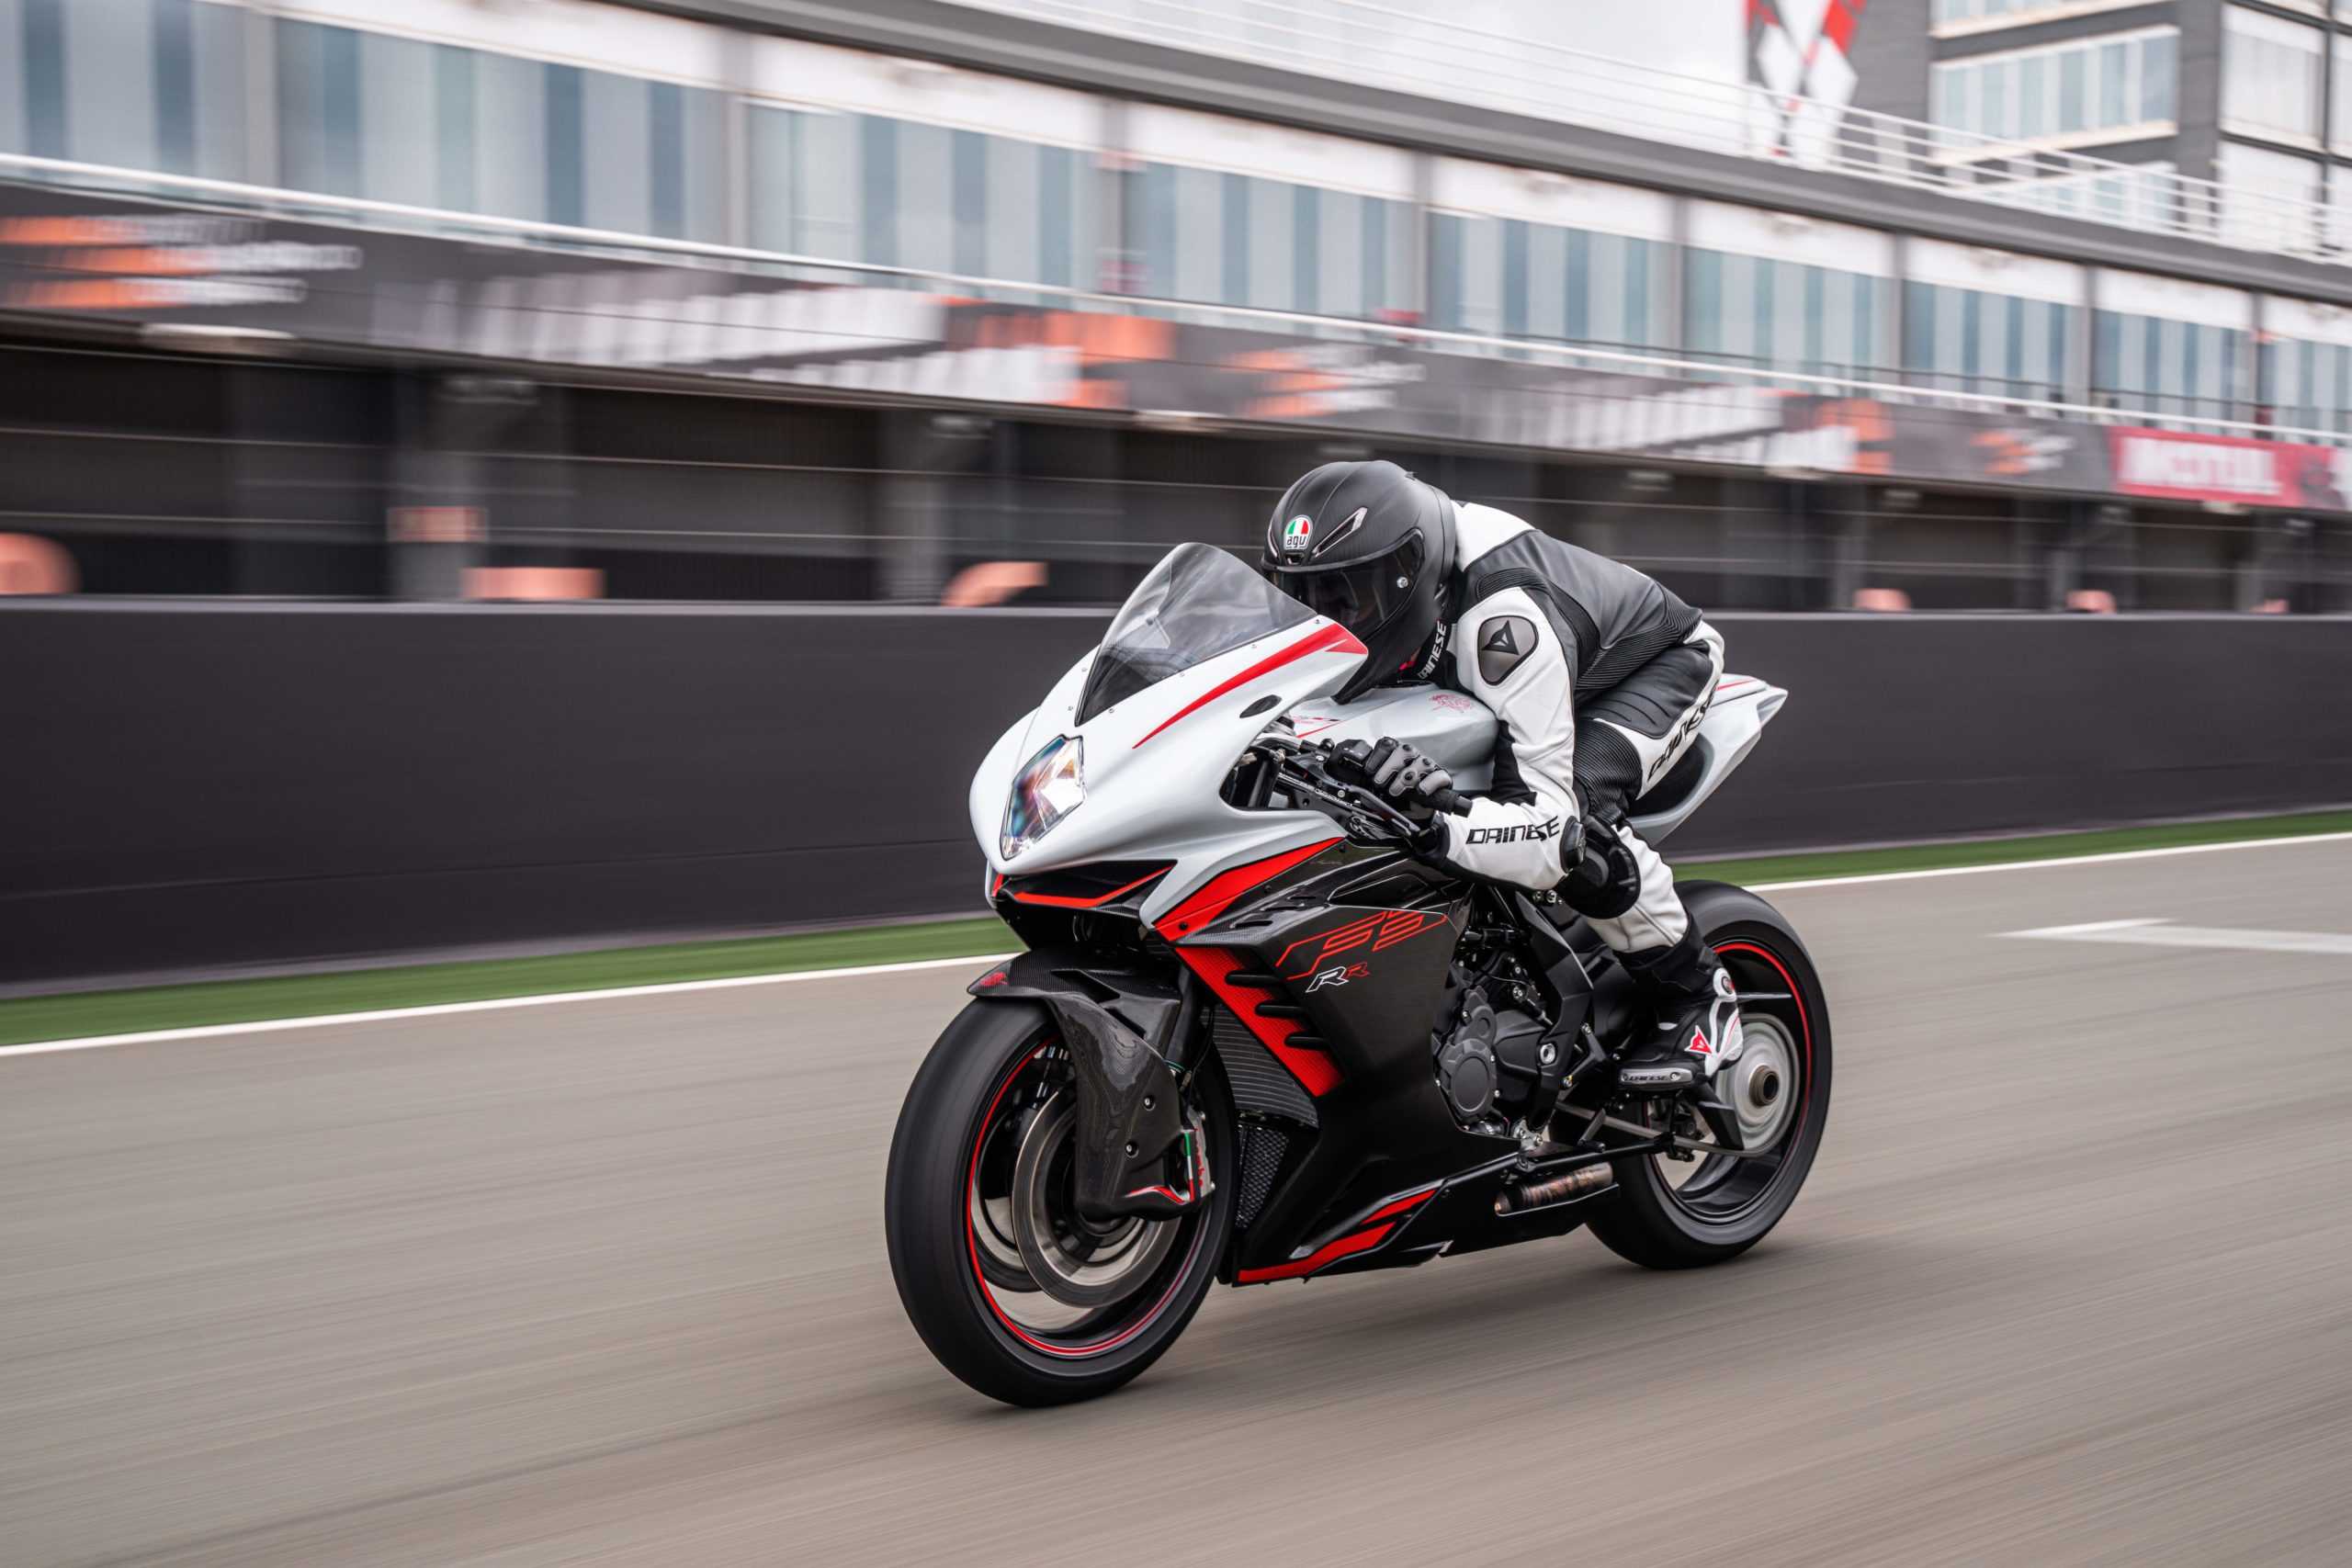 Для тех, кто мечтает прокатиться с ветерком - топ-10 самых быстрых мотоциклов в мире Рейтинг самых мощных и быстрых супербайков по состоянию на 2022 год